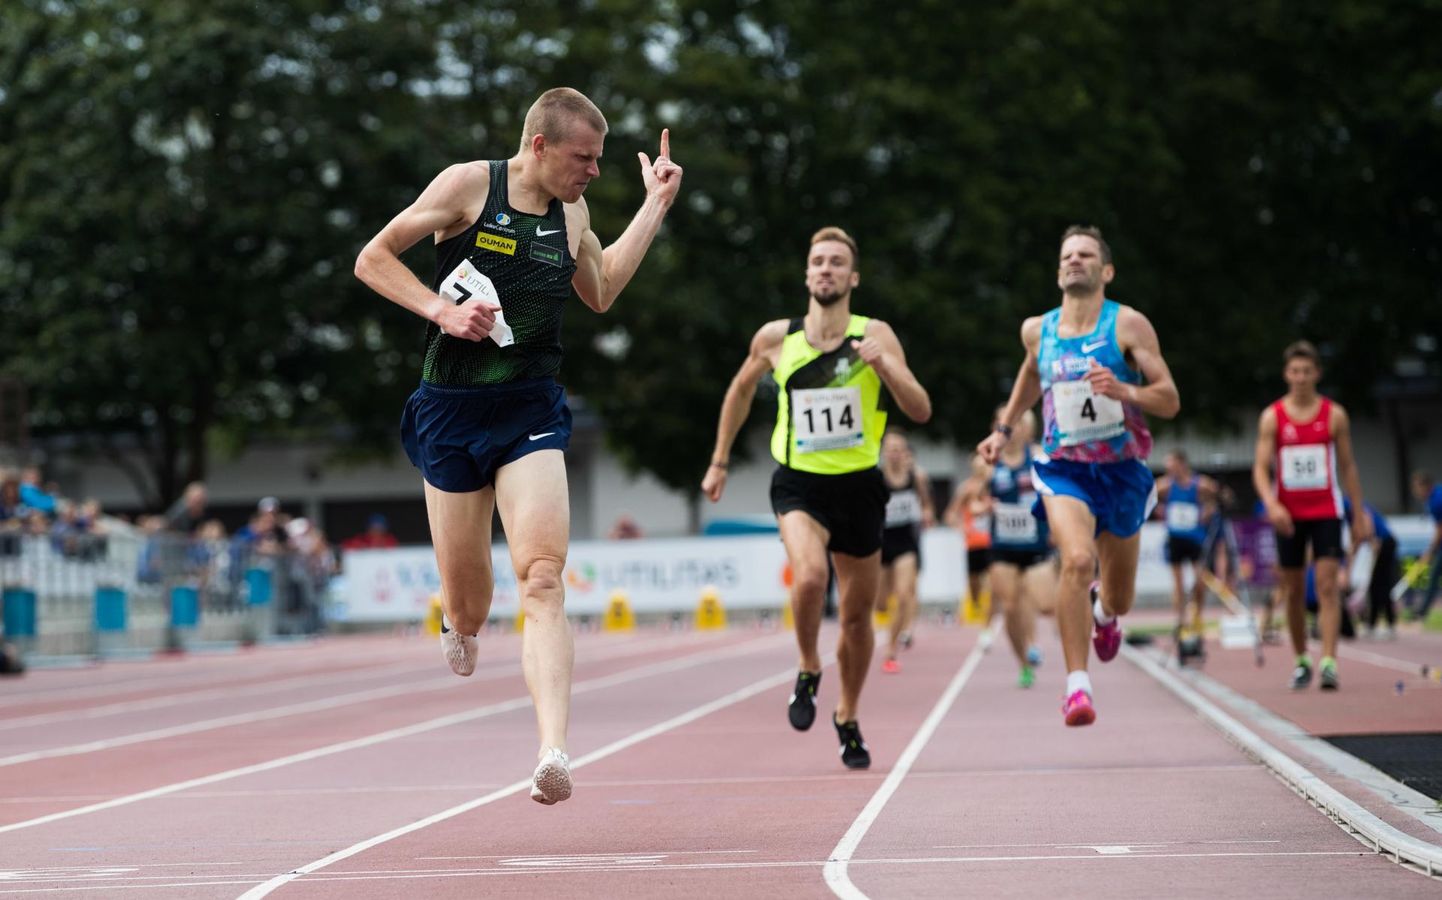 Augustis triumfeerus Kaur Kivistik (vasakul) Eesti kergejõustiku meistrivõistlustel nii 3000 meetri takistusjooksus (9.35,31) kui ka 1500 meetri jooksus (4.00,39.).